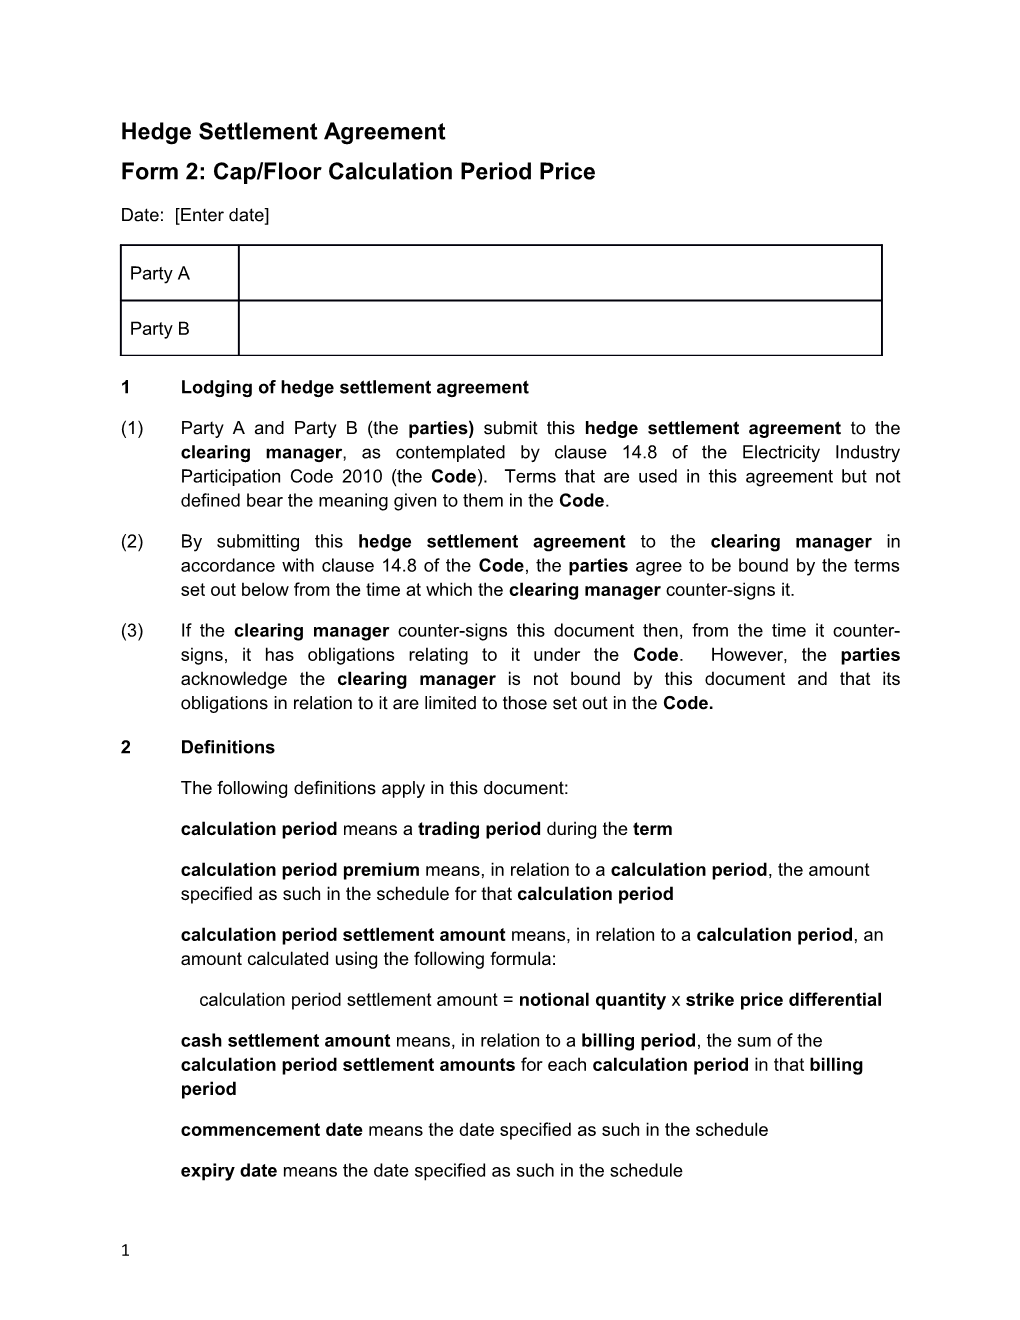 Form 2: Cap/Floor Calculation Period Price